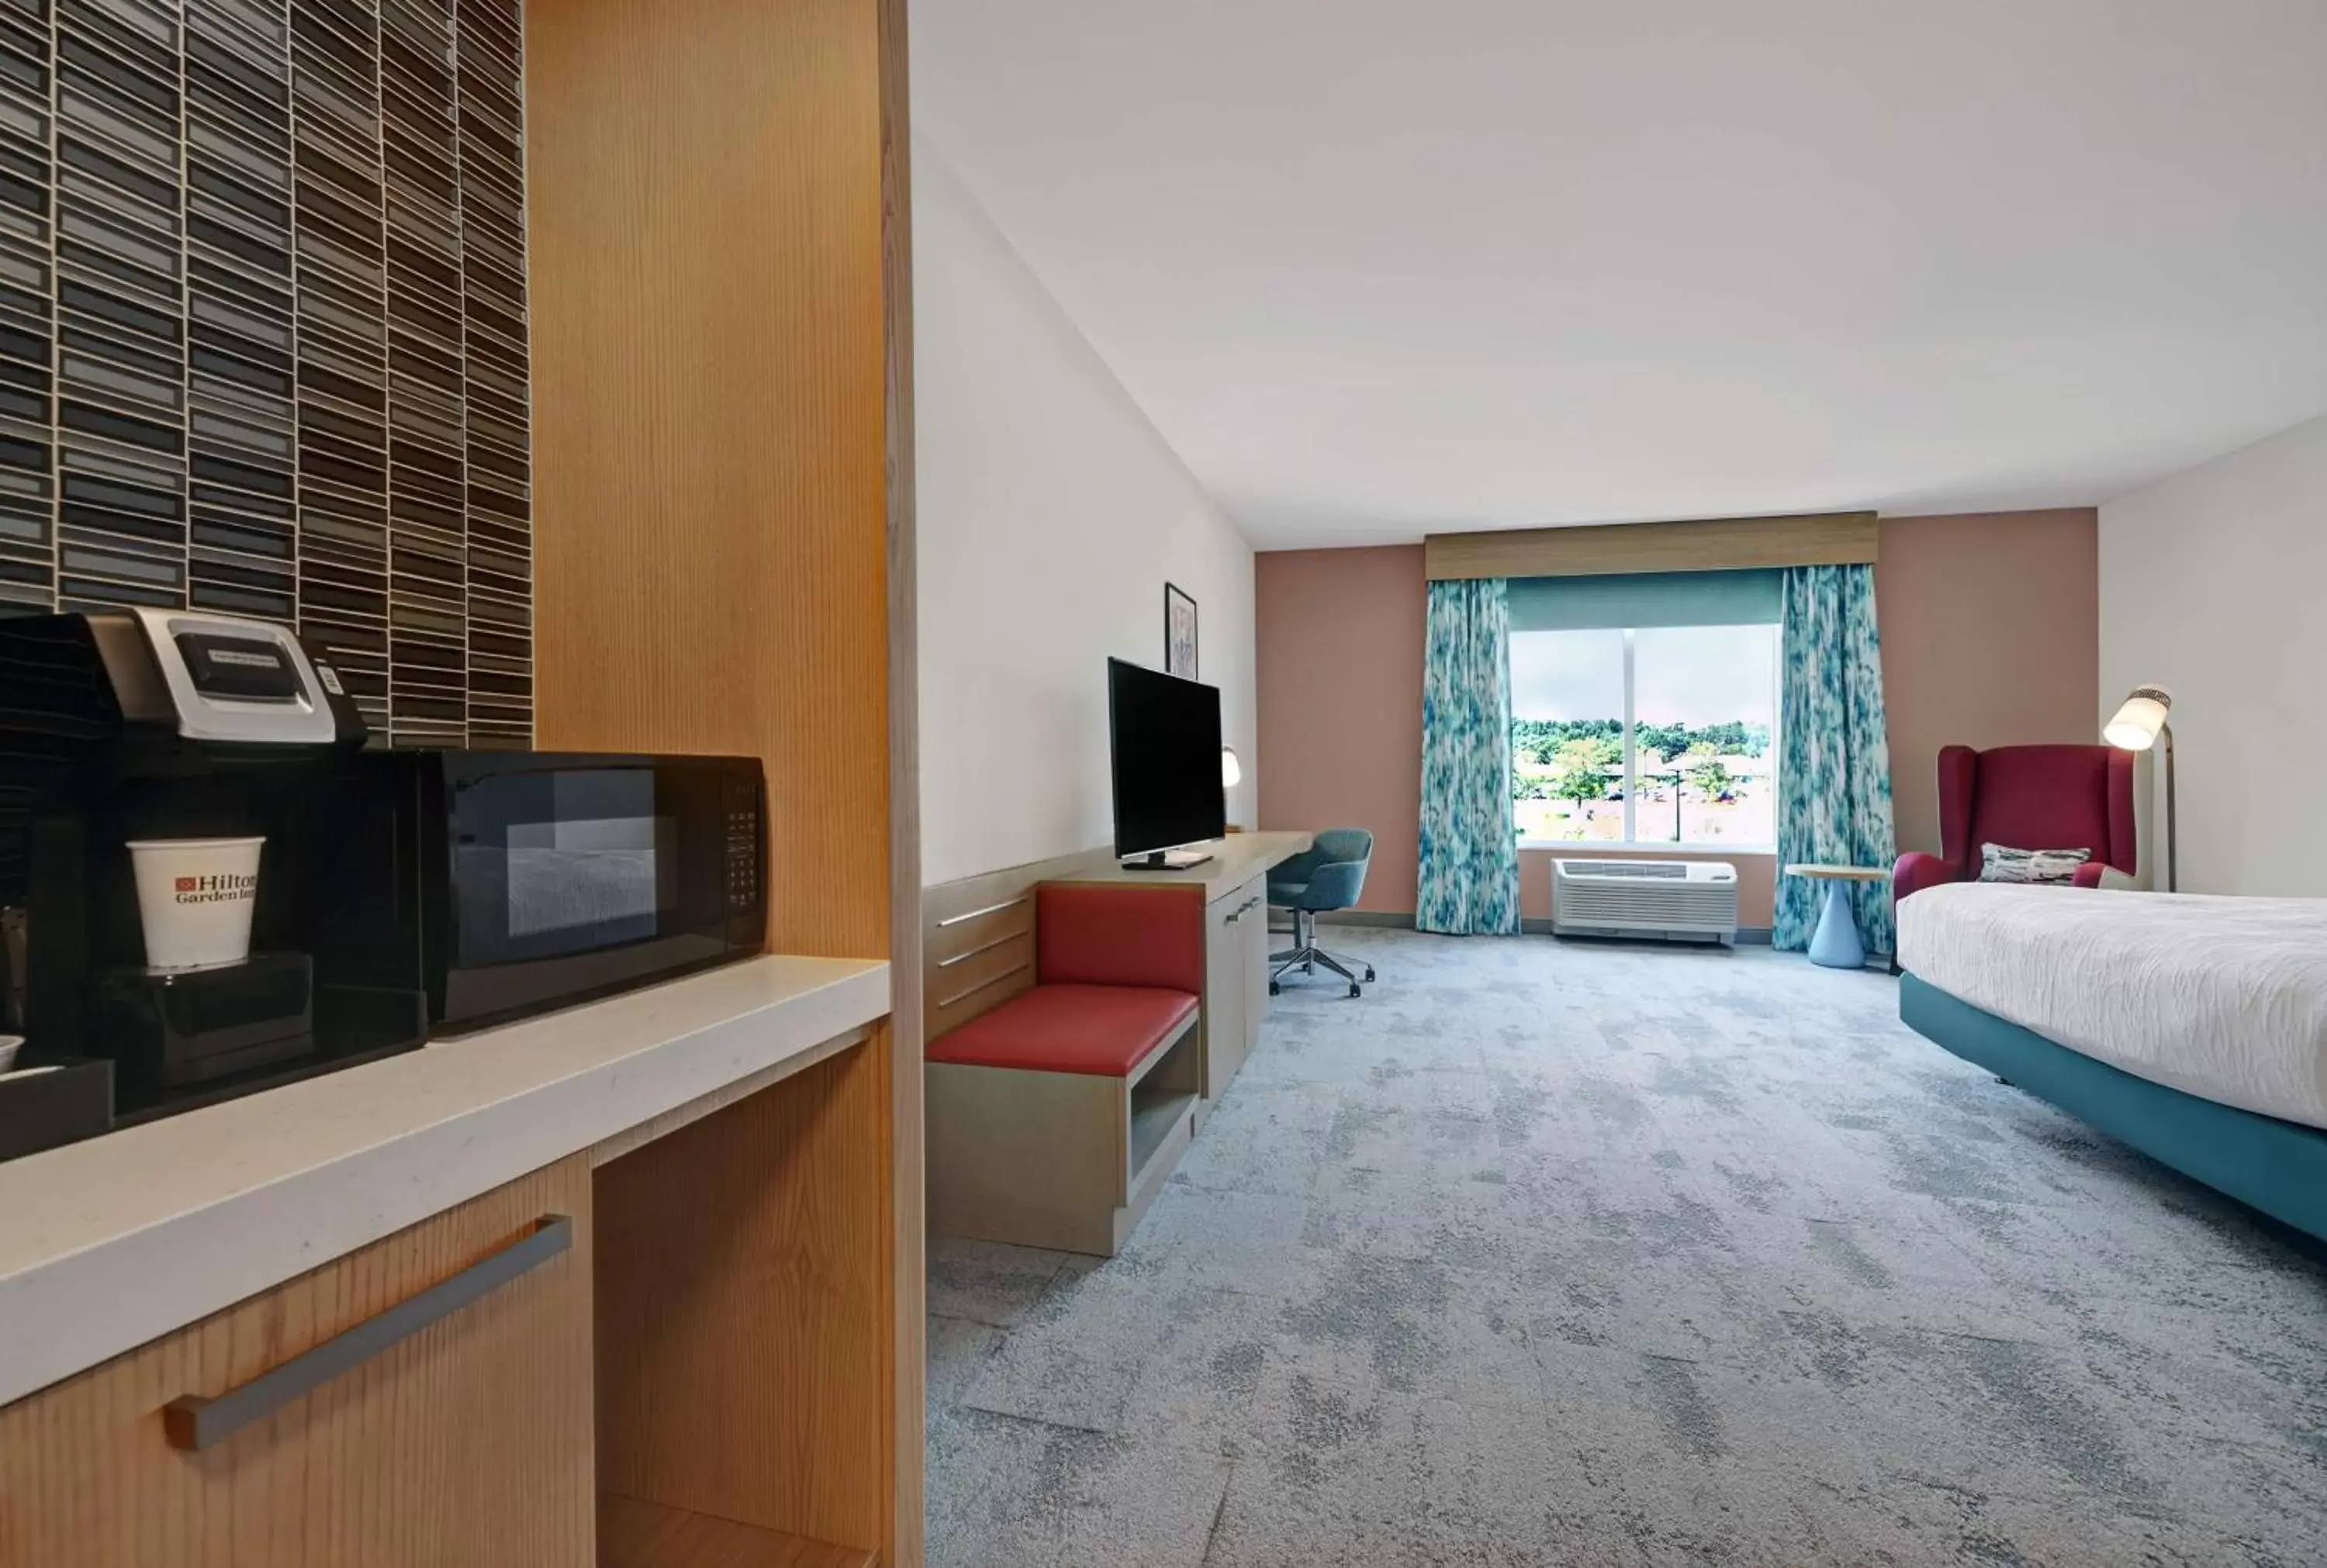 Bedroom, TV/Entertainment Center in Hilton Garden Inn Manassas